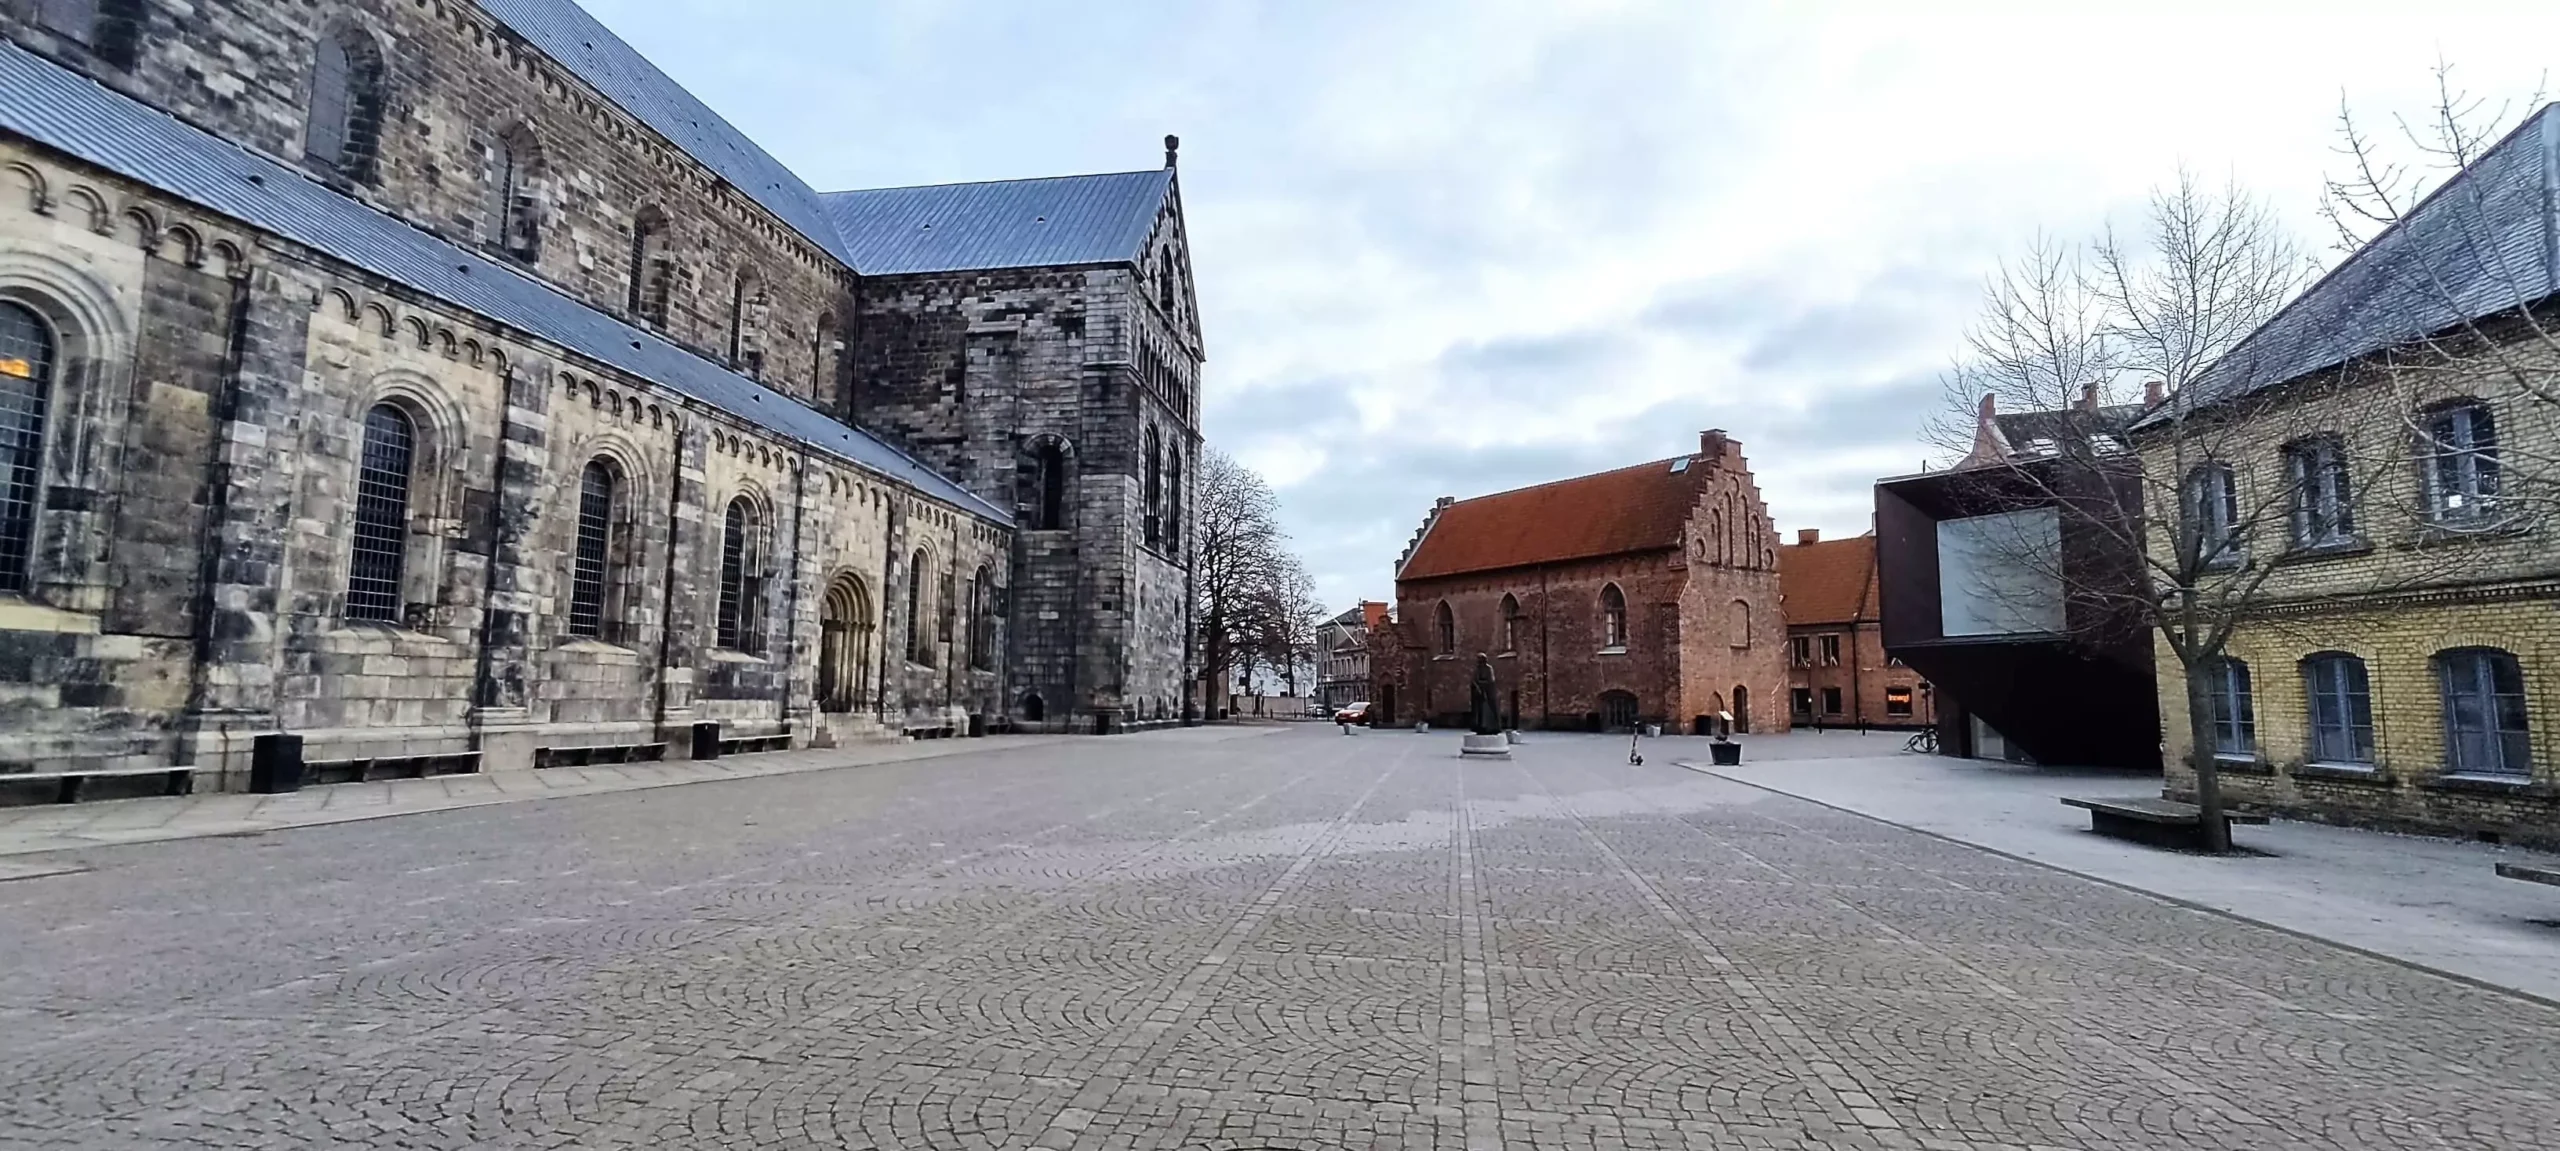 Ταξίδι στη Σουηδία: Ανακαλύπτοντας την Πανεπιστημιακή Πόλη του Lund